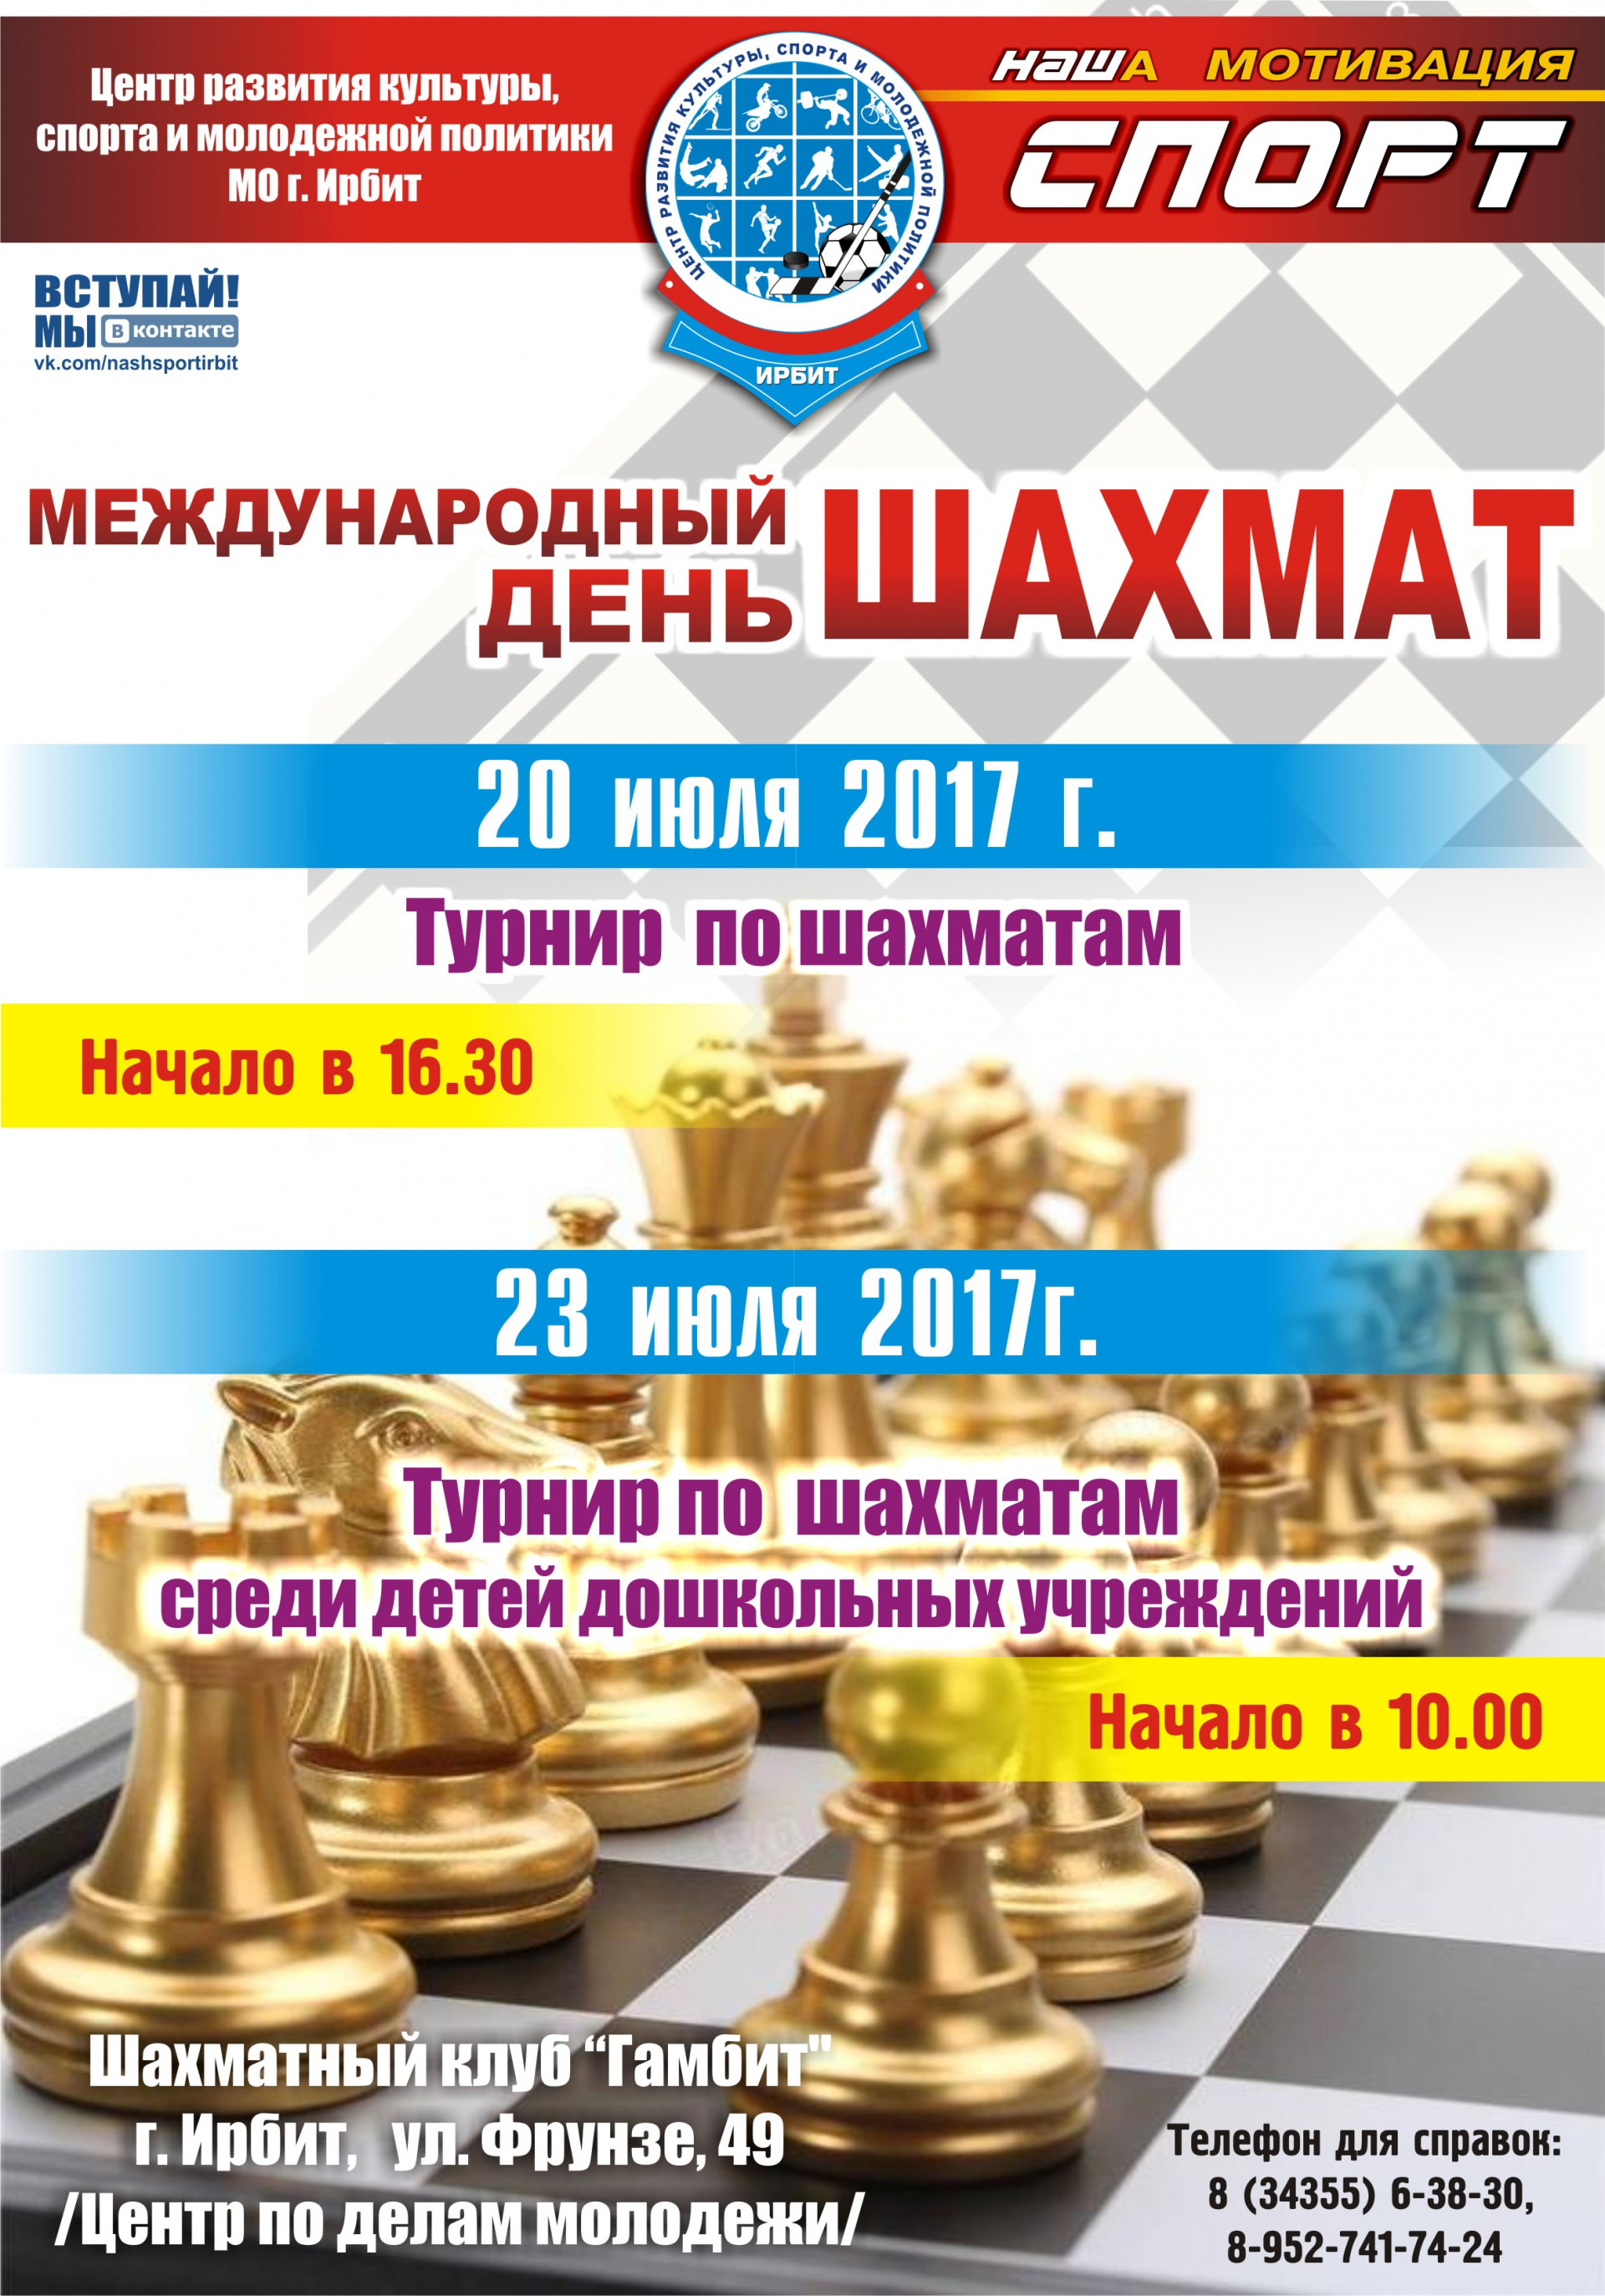 Туринр по шахматам в честь Международного дня шахмат 2017